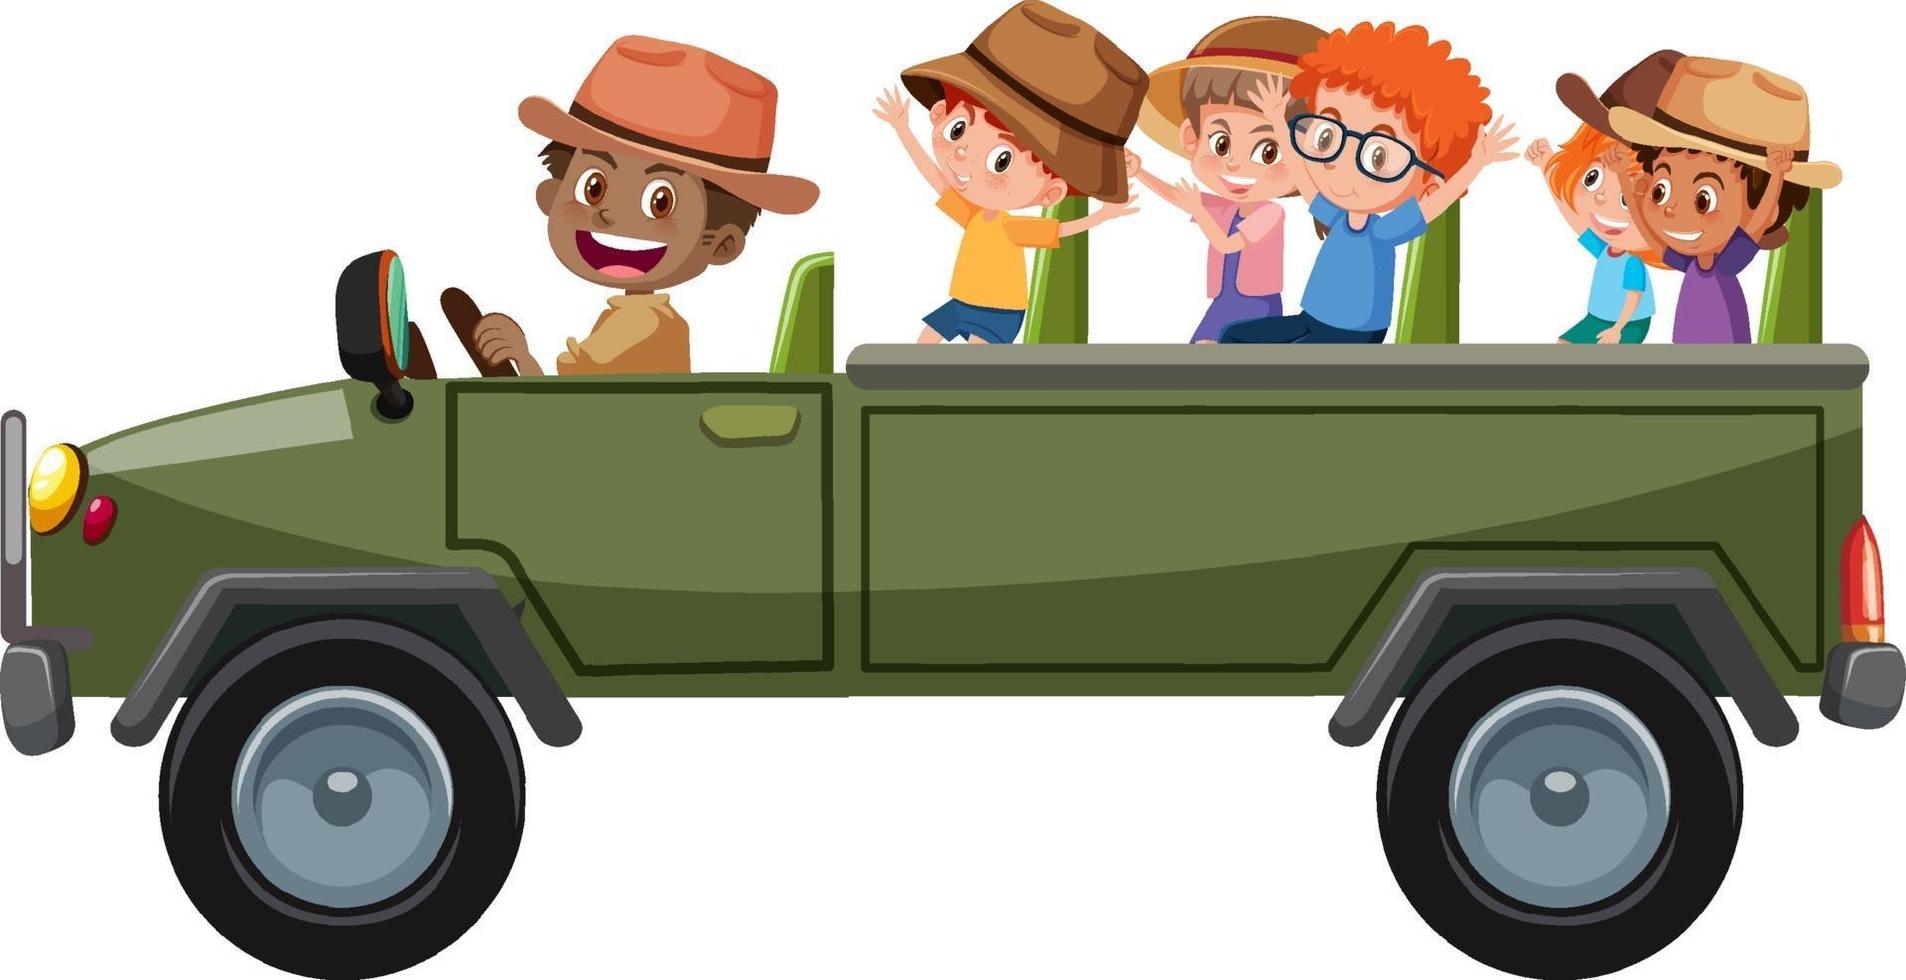 conceito de zoológico com crianças em carro de turismo isolado no fundo branco vetor